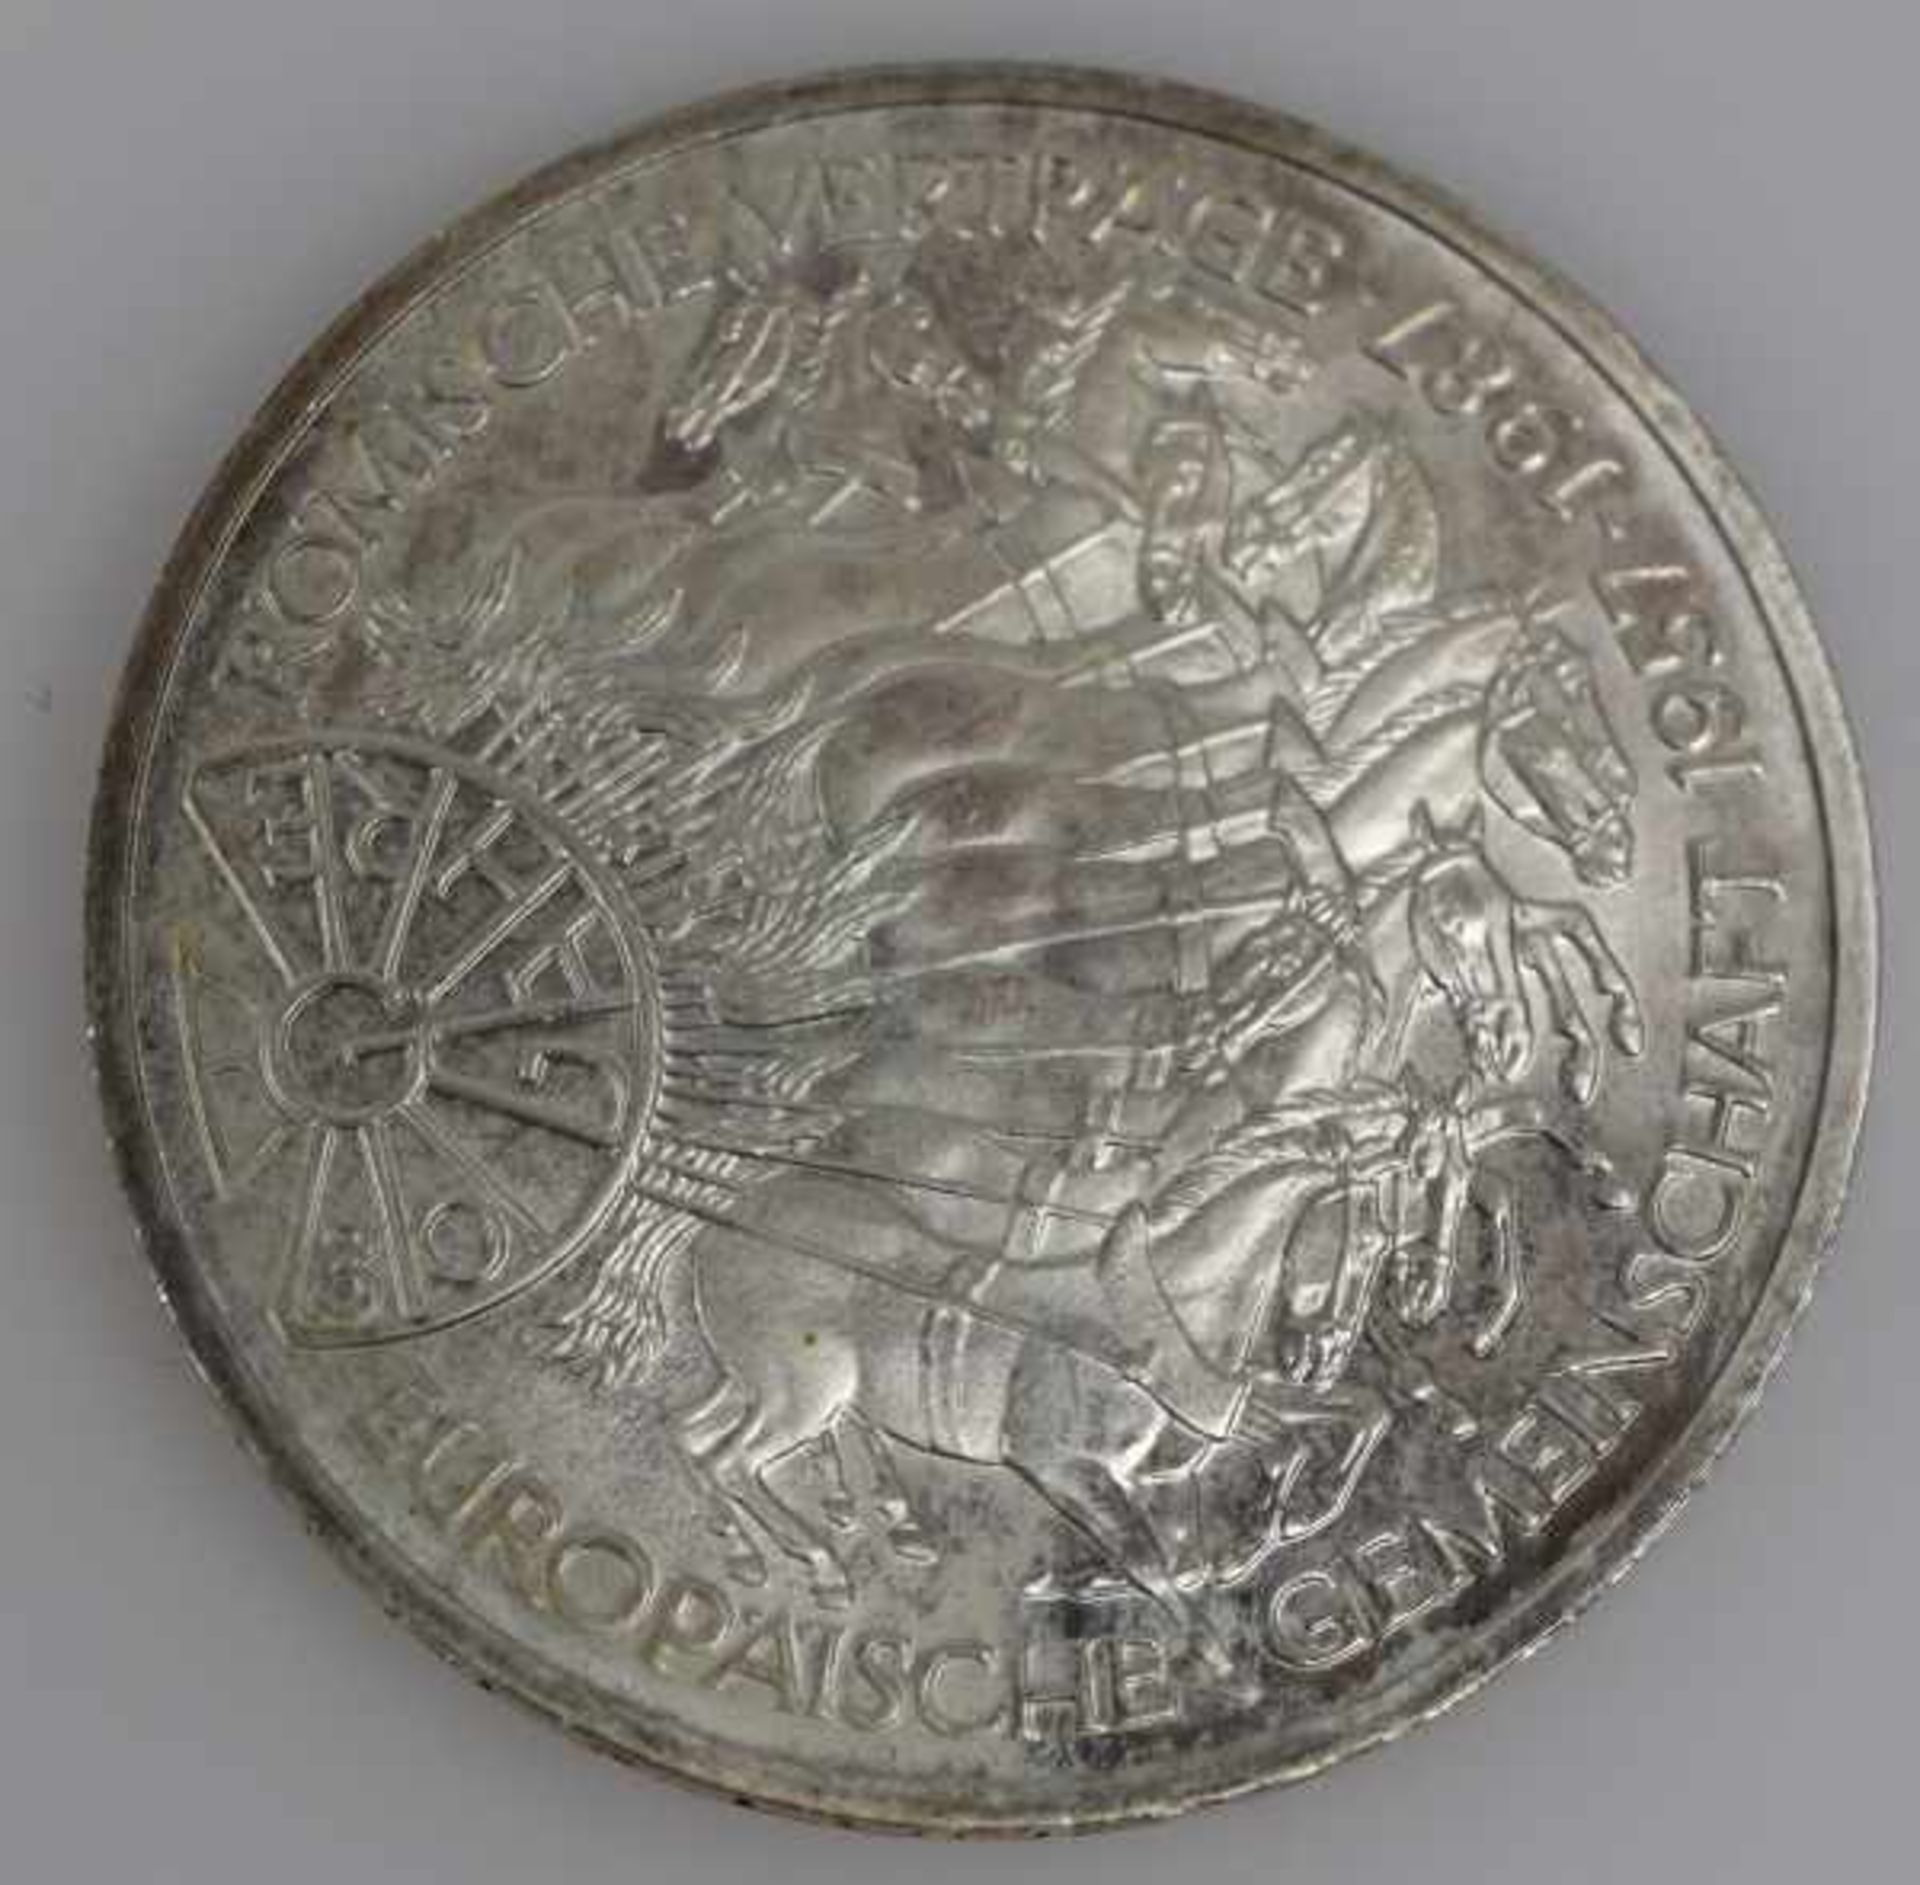 MÜNZEN-LOT 1 Münzanhänger mit Münze 10Fr. Schweiz Nachprägung in Fassung 14ct, 8,3g -1 Goldmünze 200 - Bild 7 aus 17